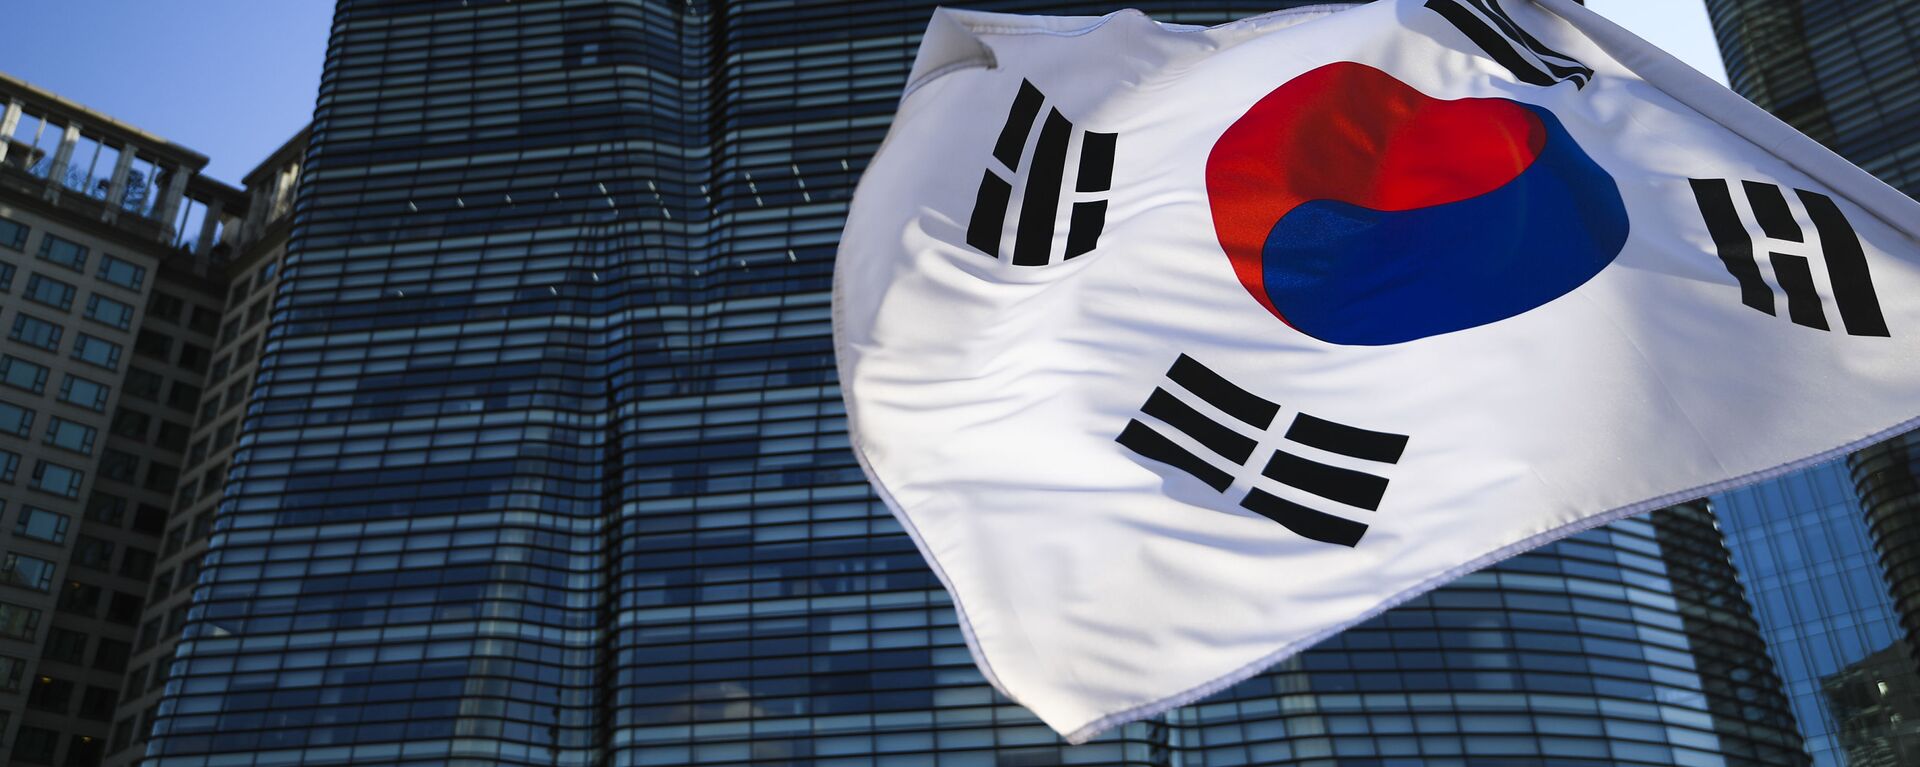 韓国の旗 - Sputnik 日本, 1920, 27.12.2021